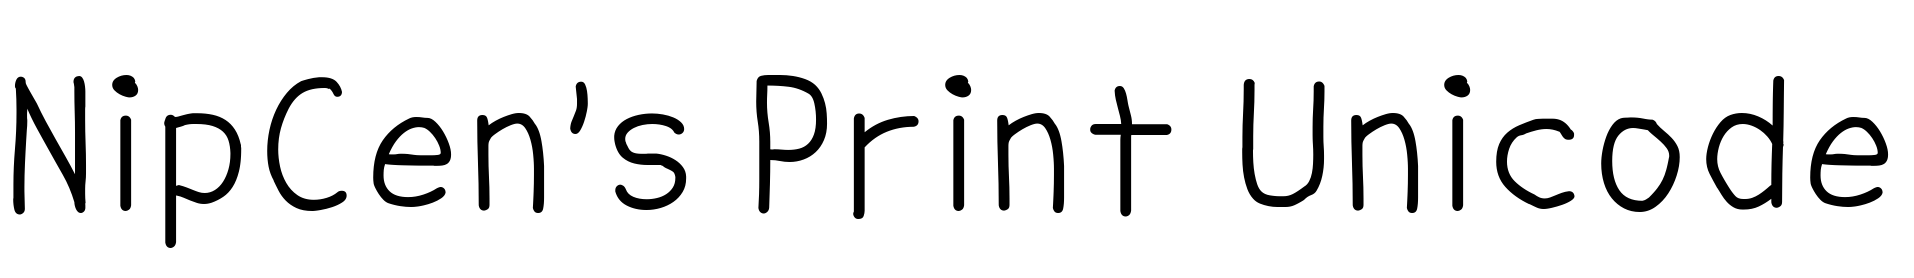 Nipcens Print Unicode